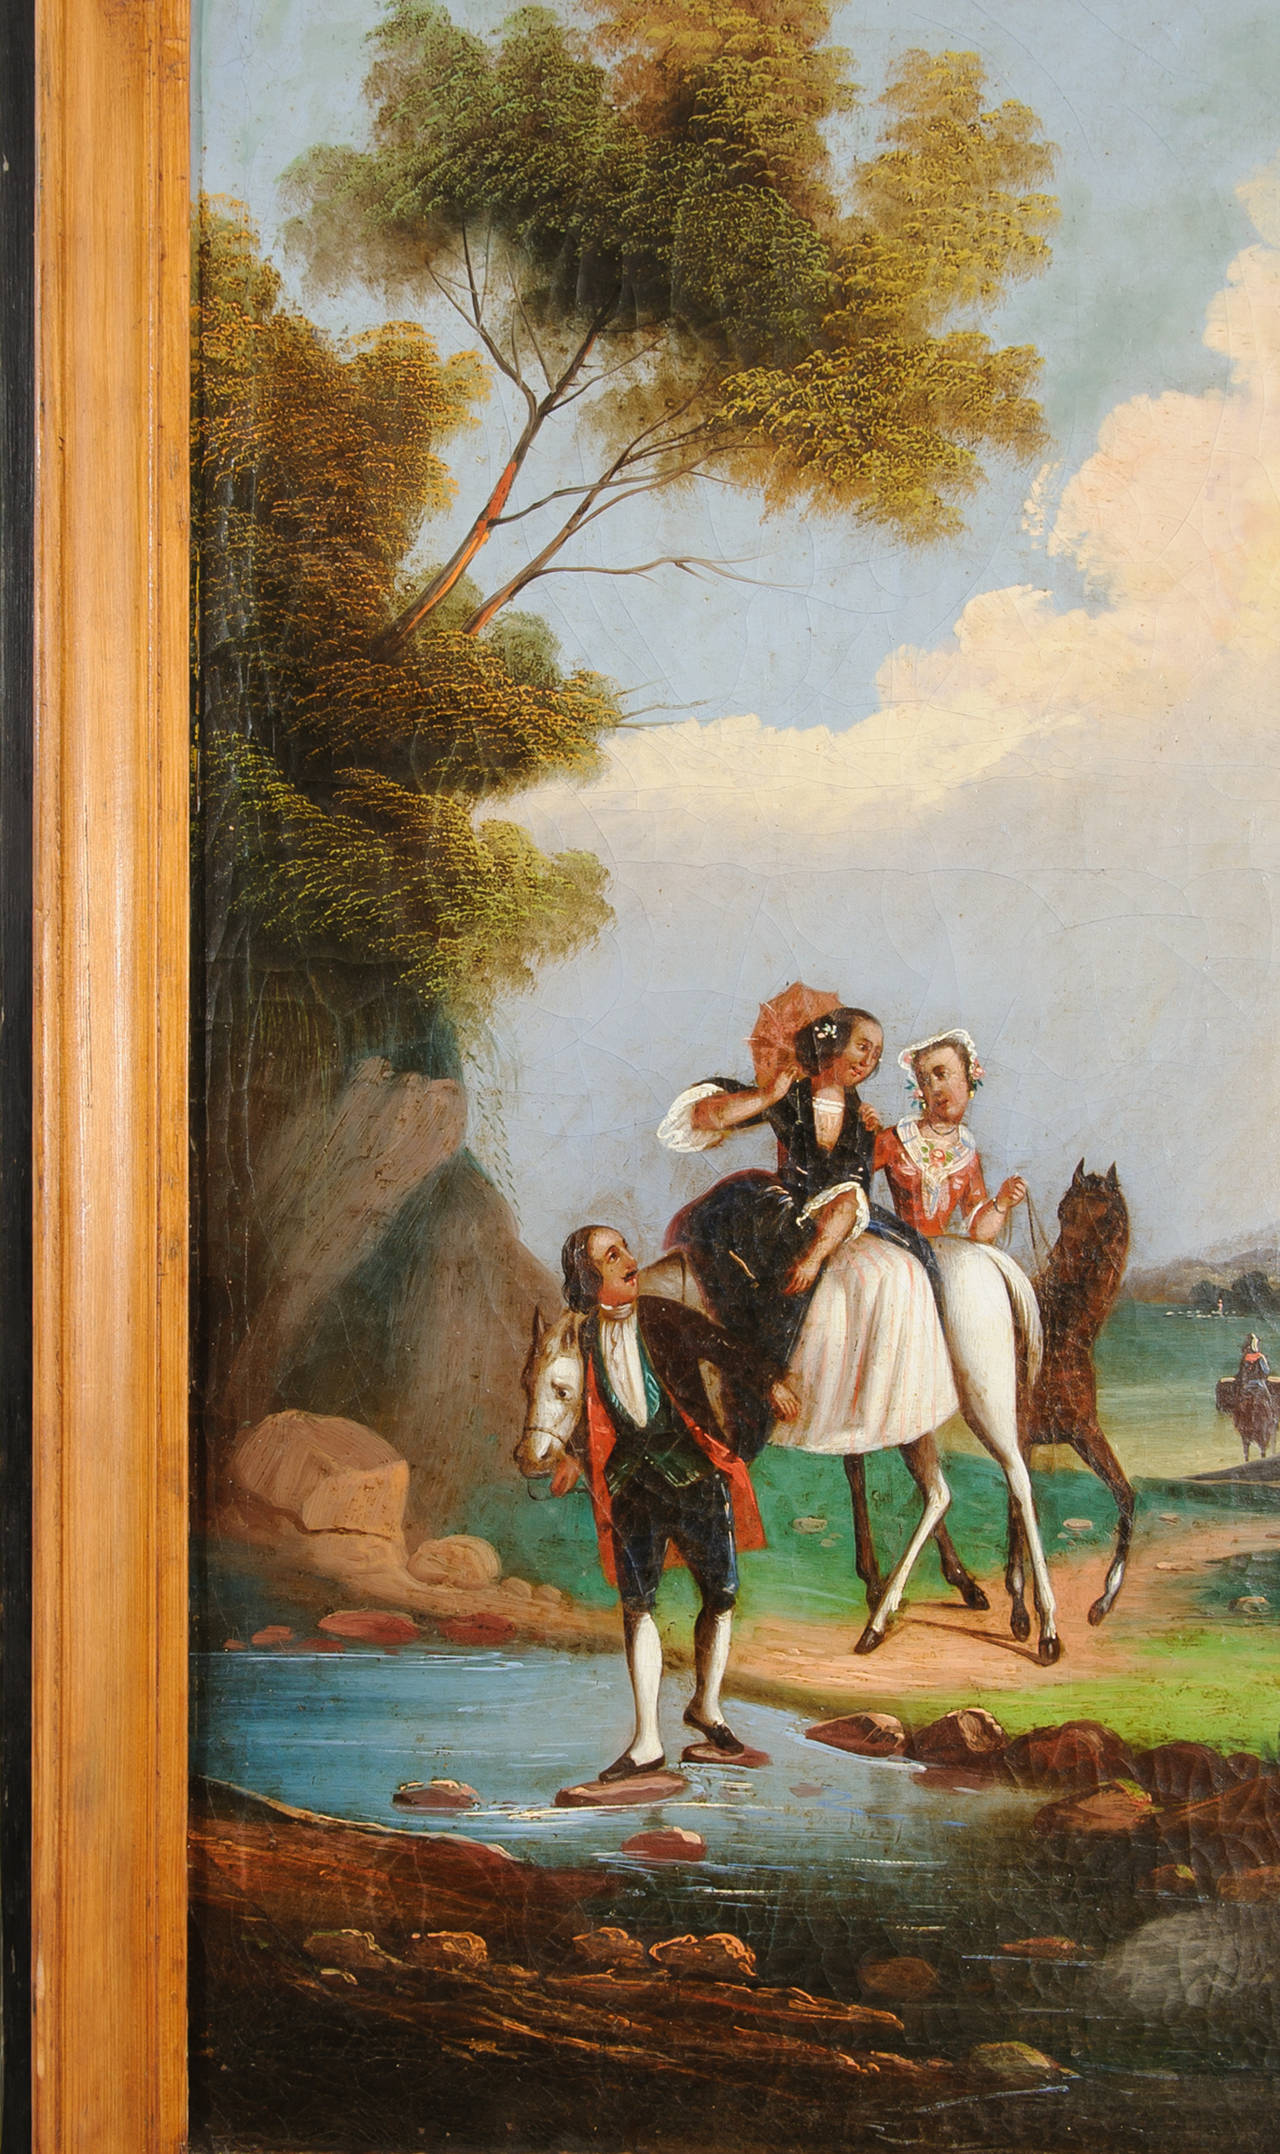 Miroir trumeau Louis XVI avec verre au mercure d'origine. La peinture de paysage est dans le style italianisant favorisé au 18ème siècle. Le feuillage crée un riche jeu de couleurs avec les nuages légers, le ciel bleu et la lumière changeante du